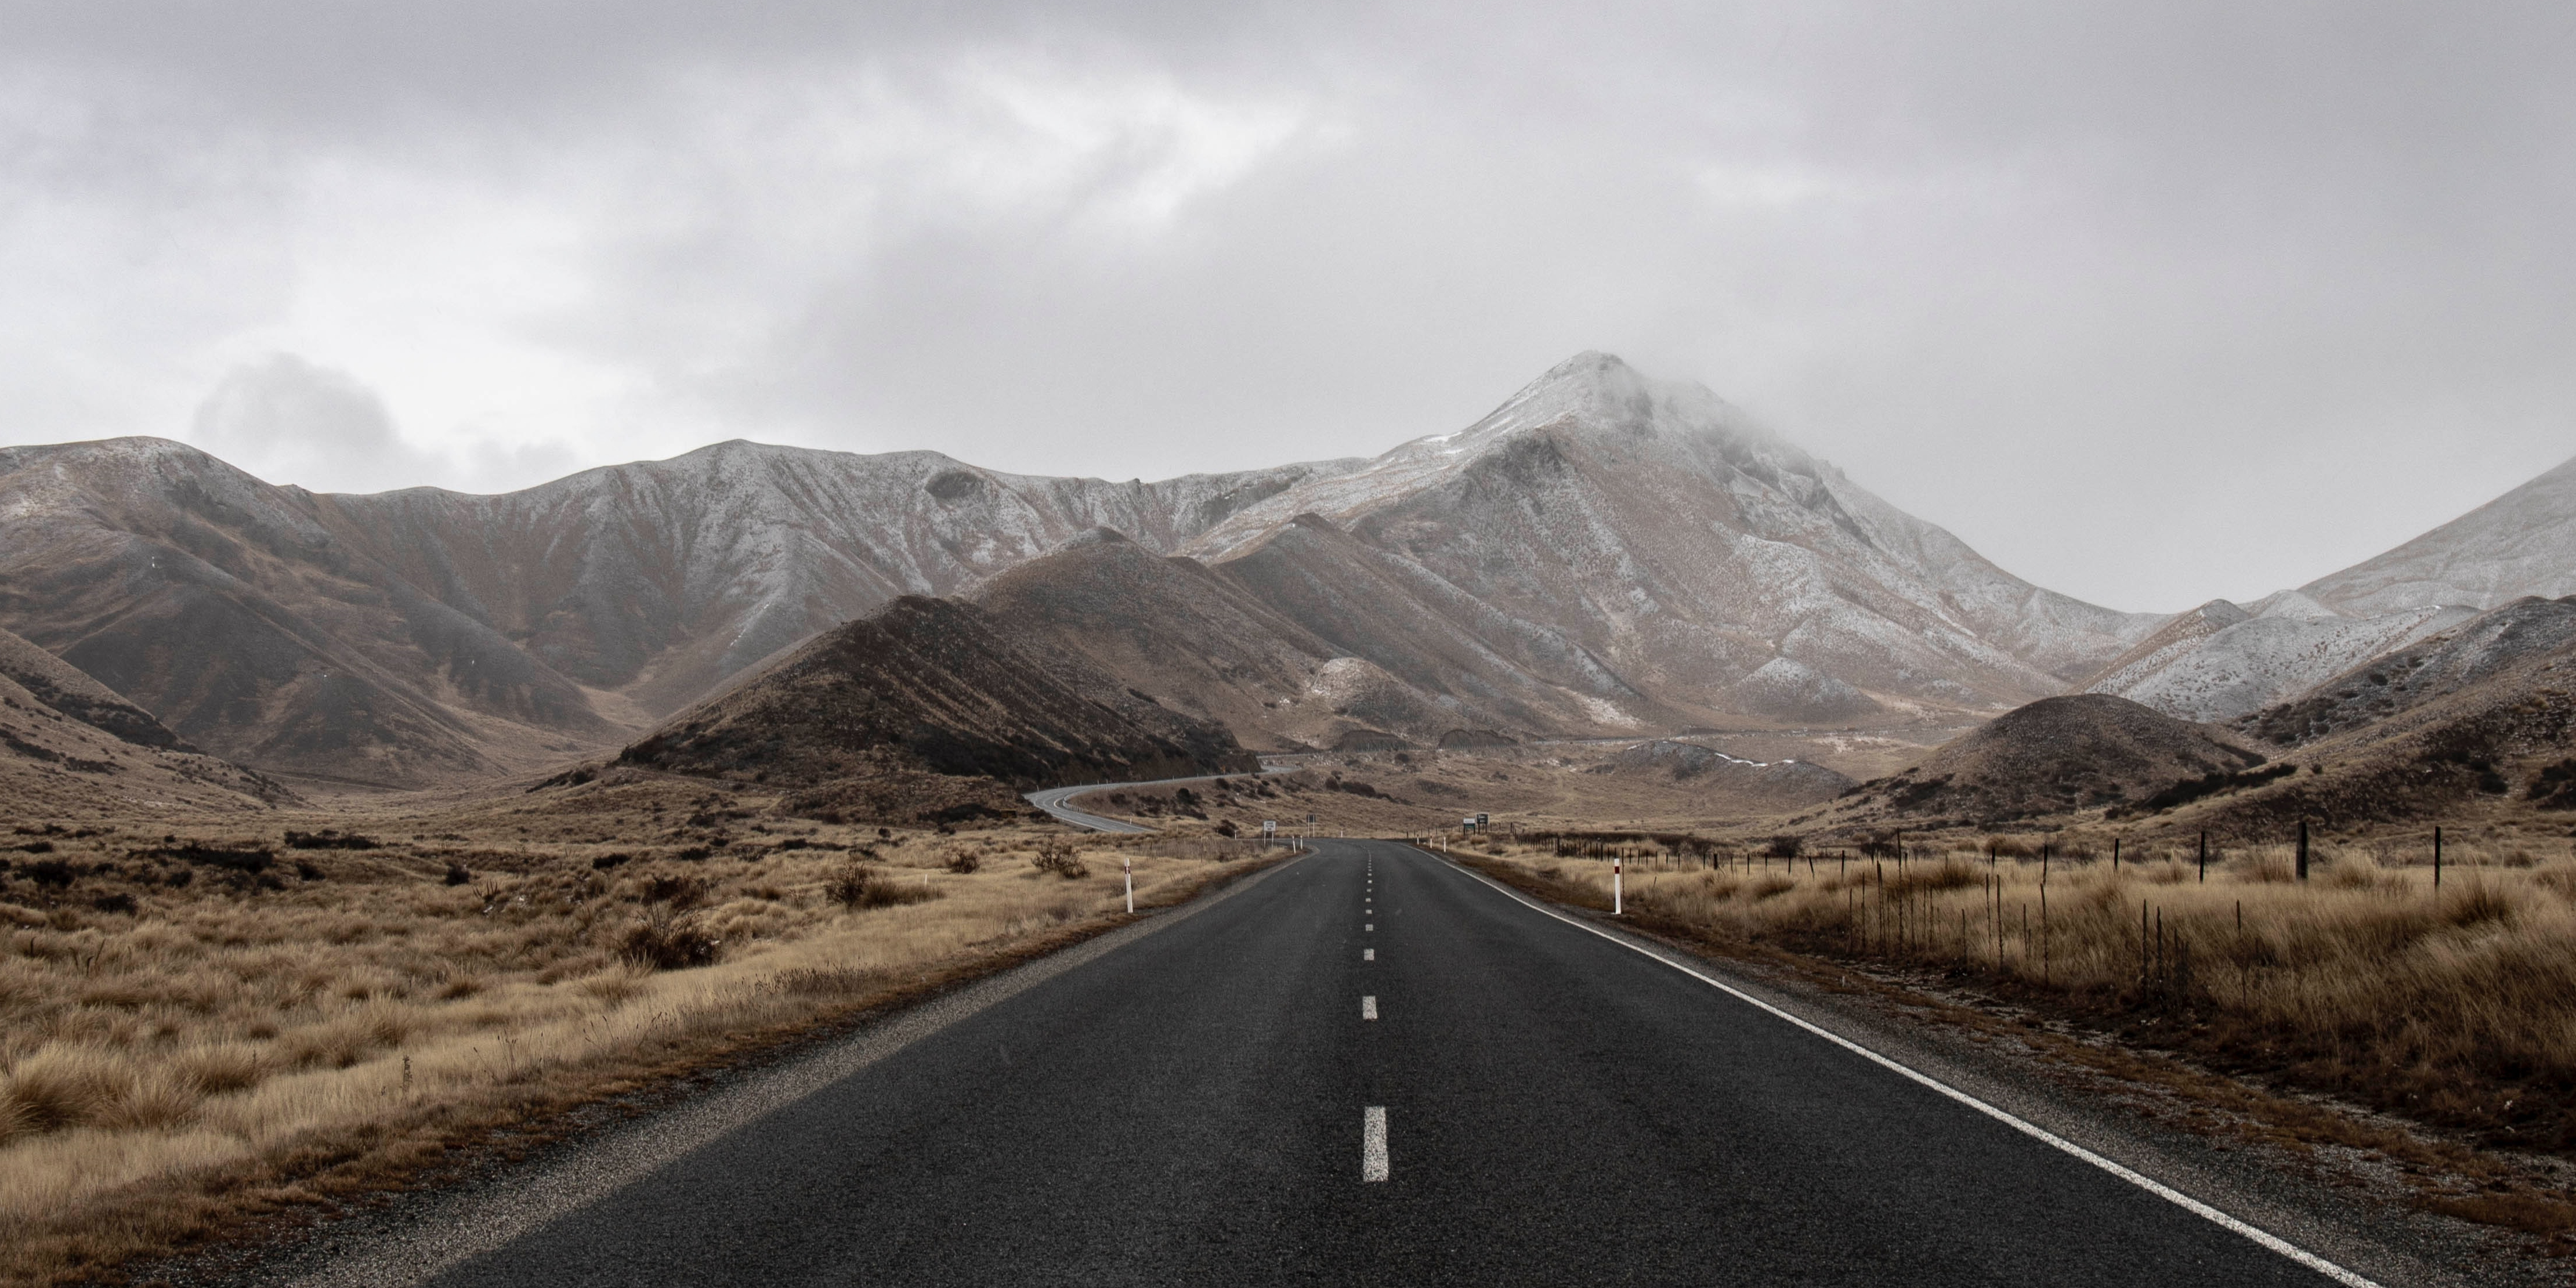 An empty road heading towards a rainy mountain